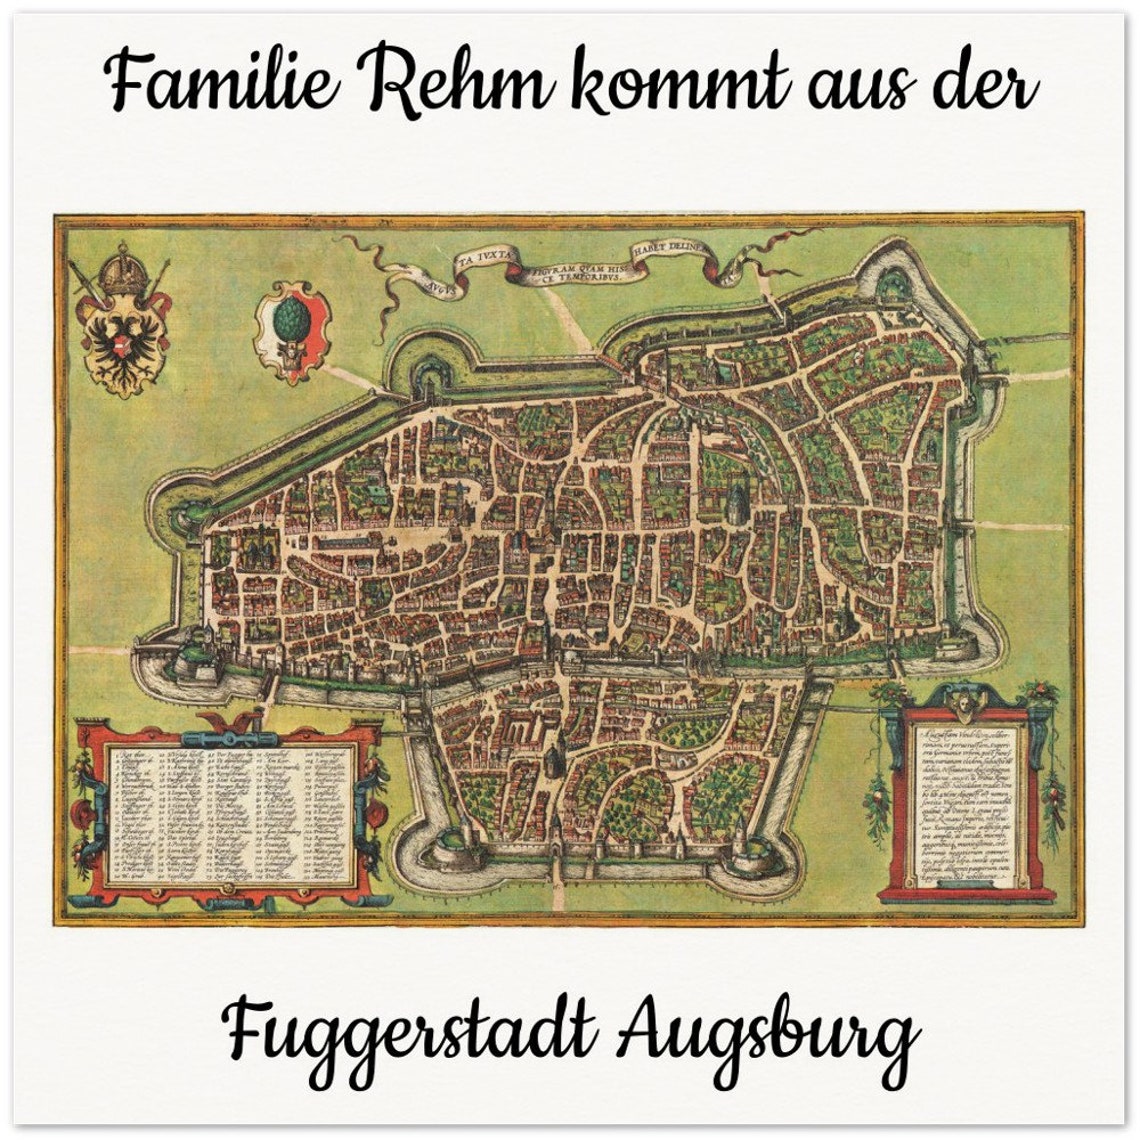 Personalisierte historische deutsche Stadtansichten